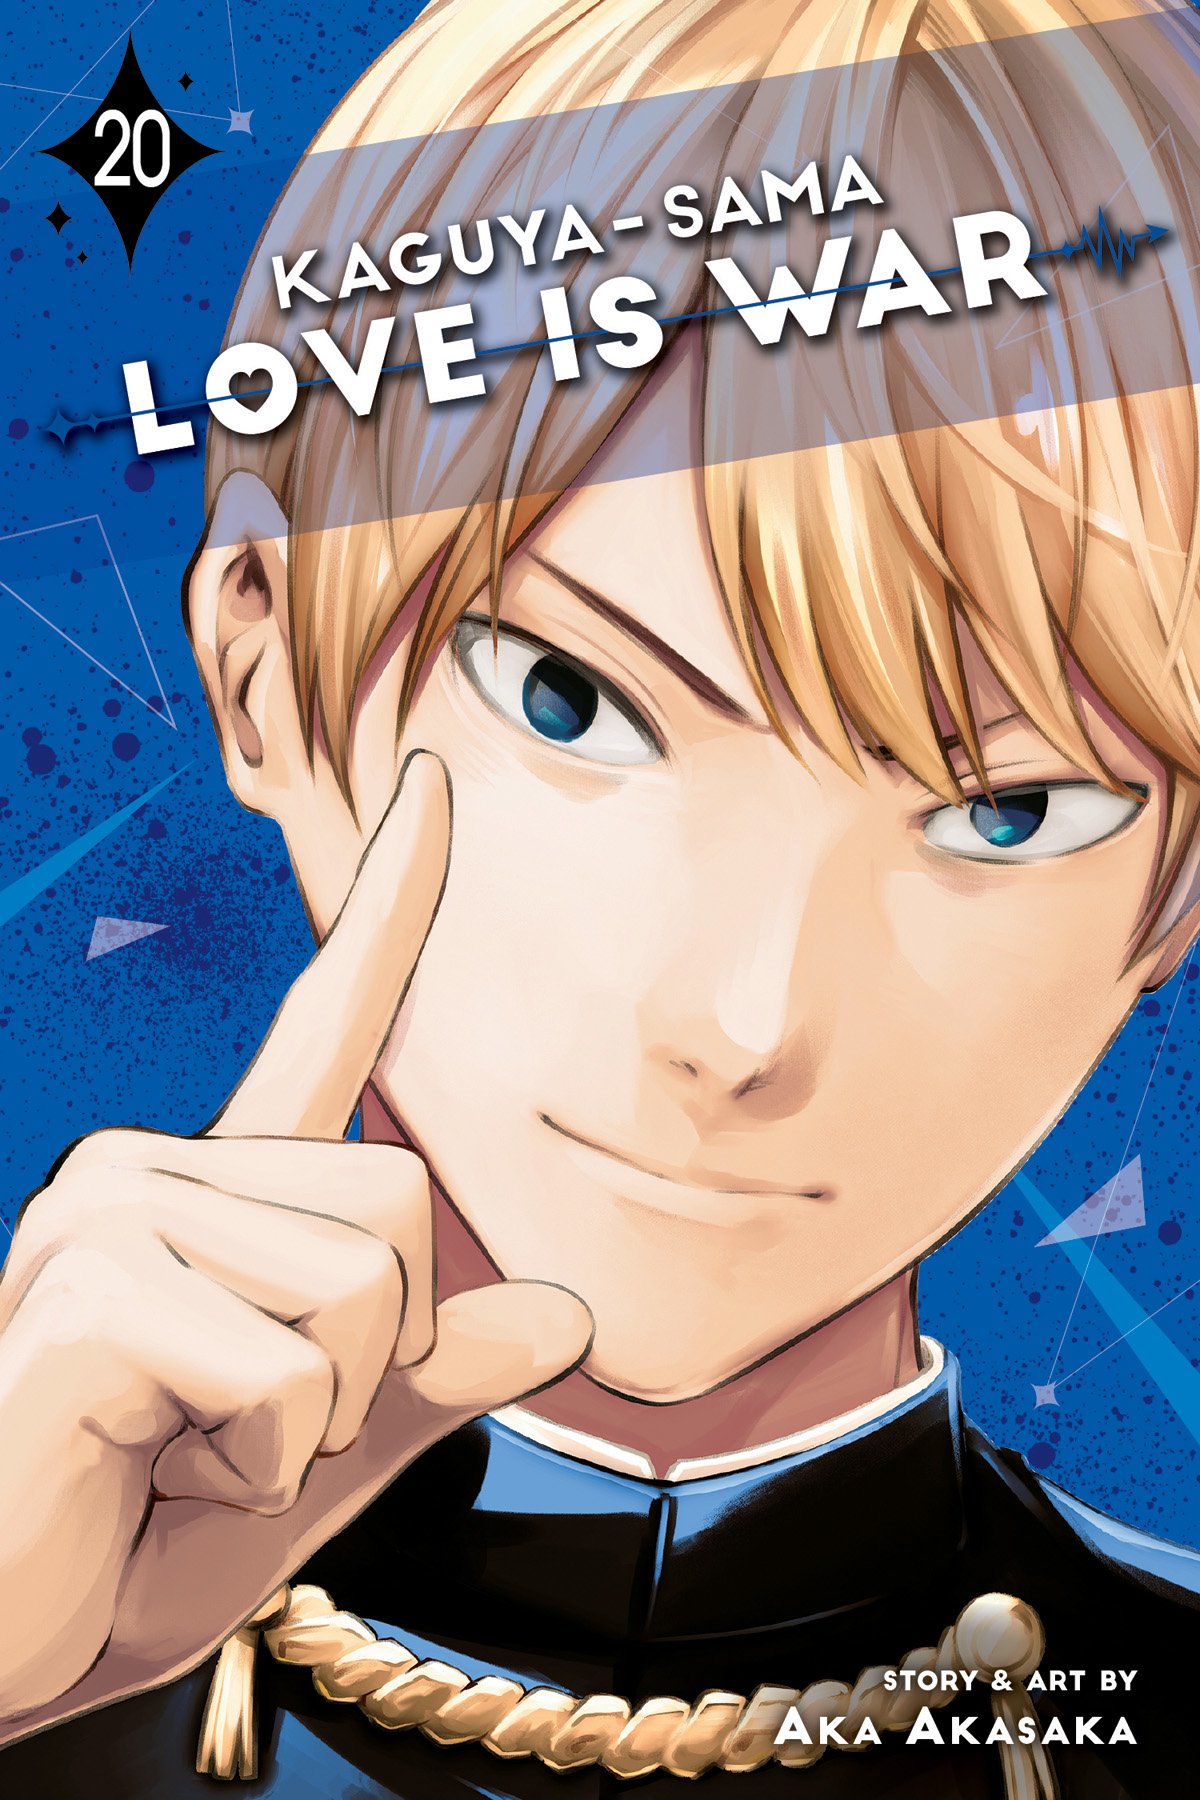 Kaguya Sama Love is War Manga Volume 20